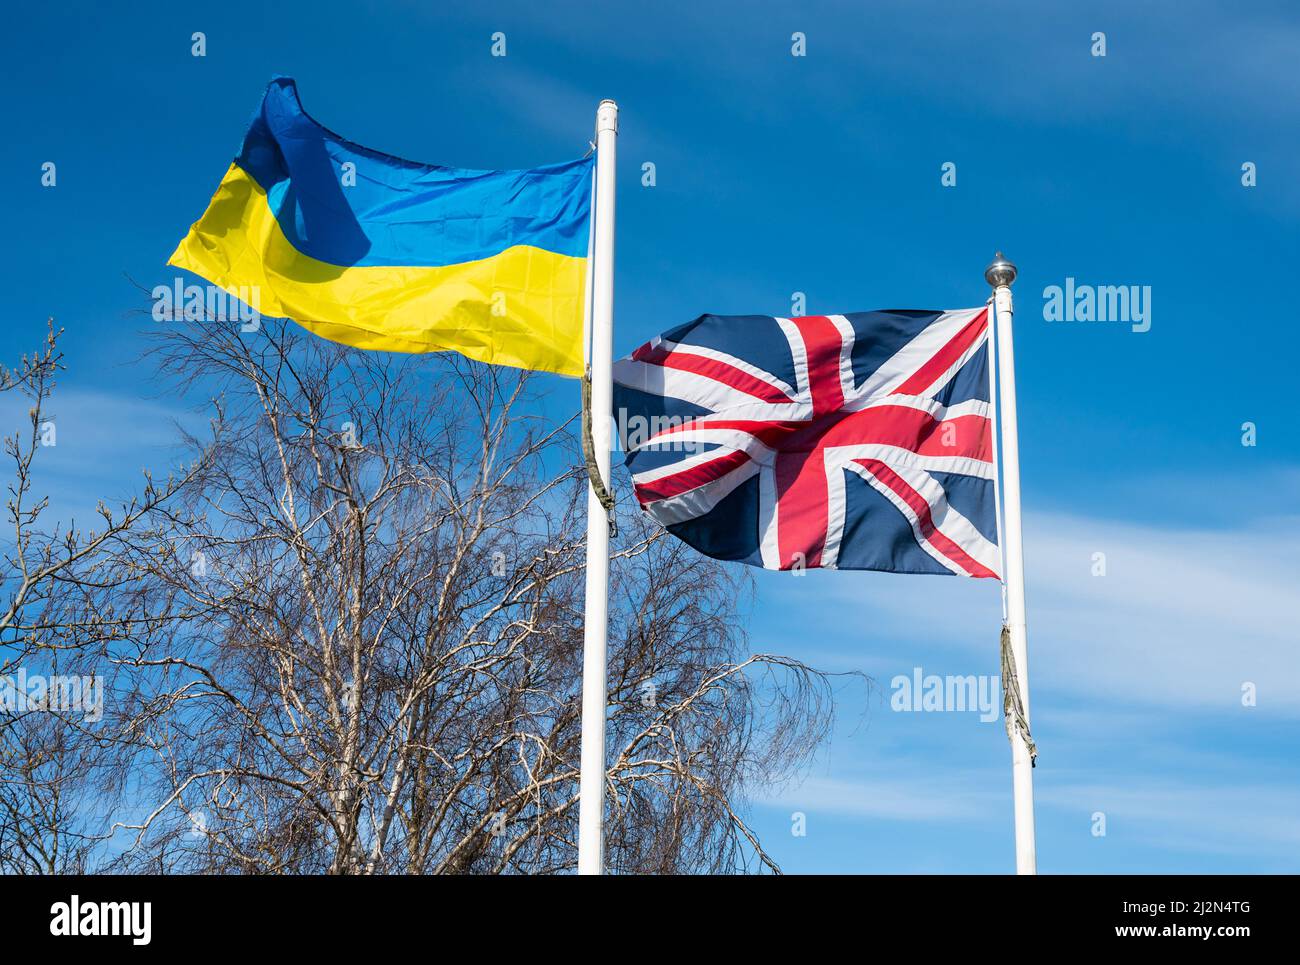 Drapeau ukrainien et drapeau britannique Jack de l'Union volant ensemble au Royaume-Uni, montrant la solidarité et le soutien à la population de l'Ukraine dans la guerre de Russie en Ukraine. Banque D'Images